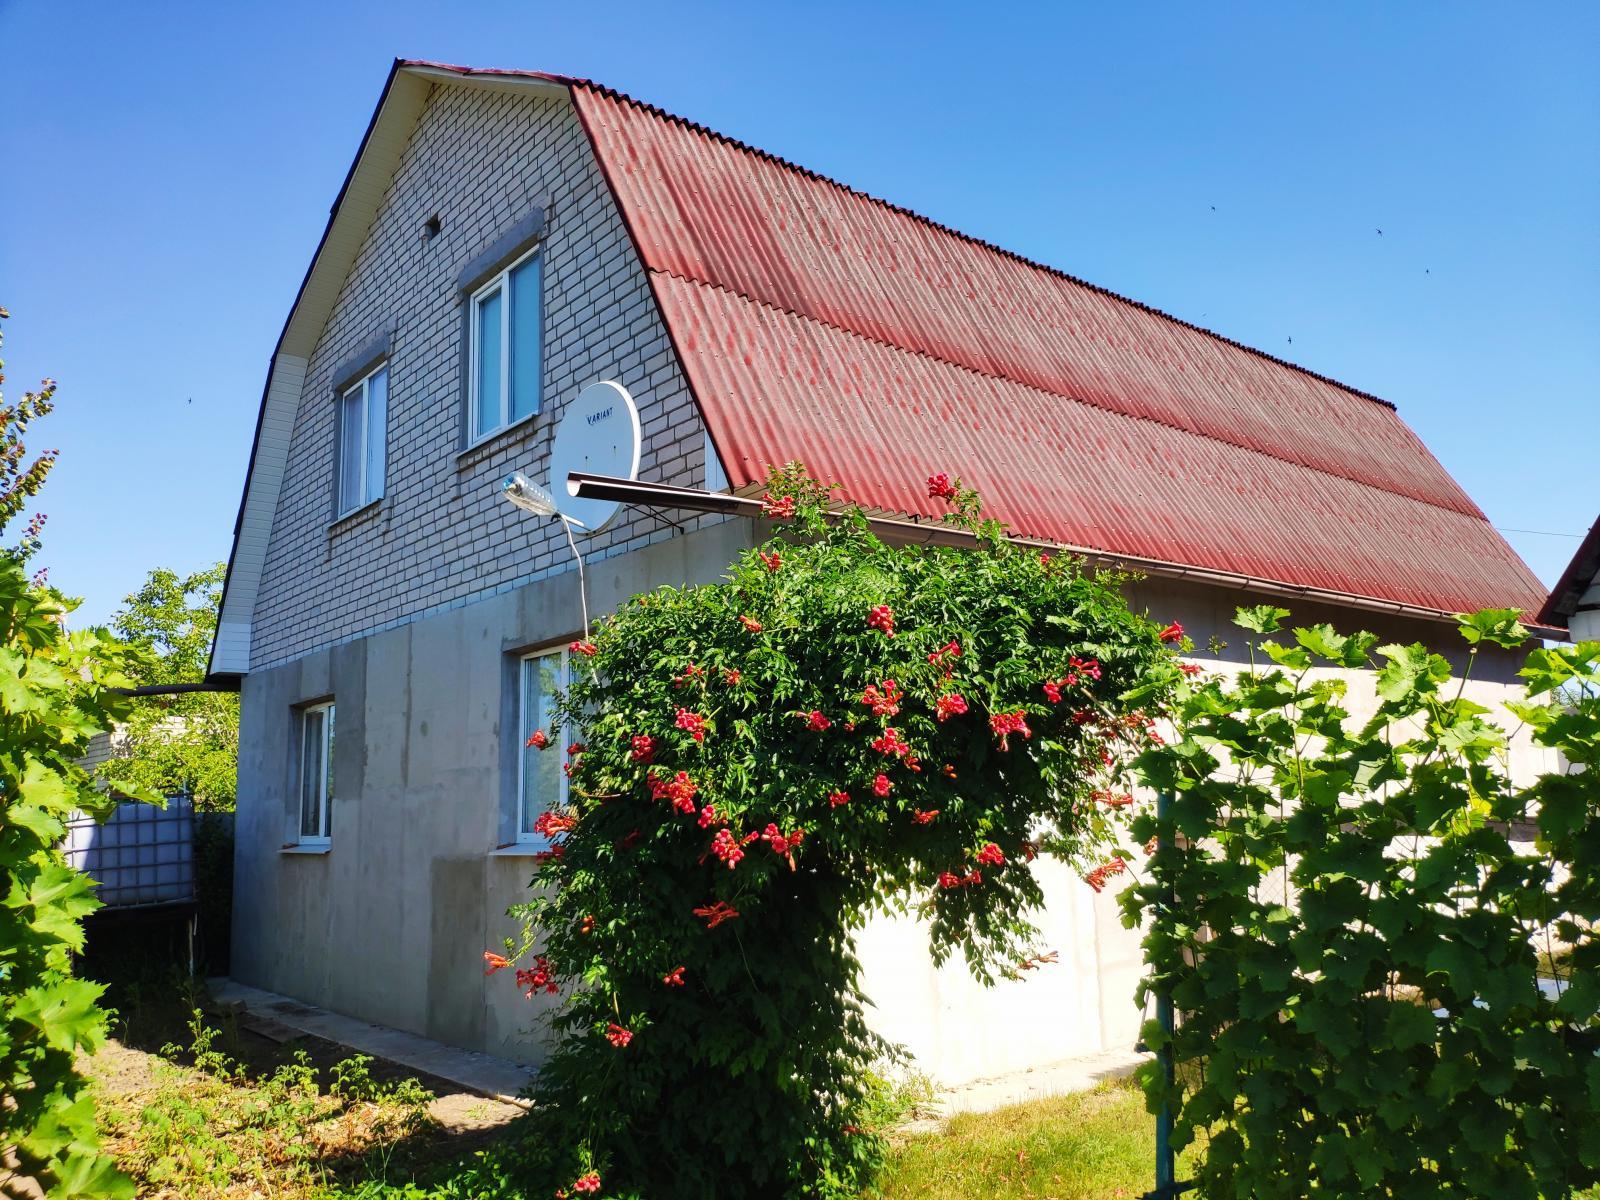 Продам дом 2011 года постройки в Люботине, 25 мин. от Холодной горы